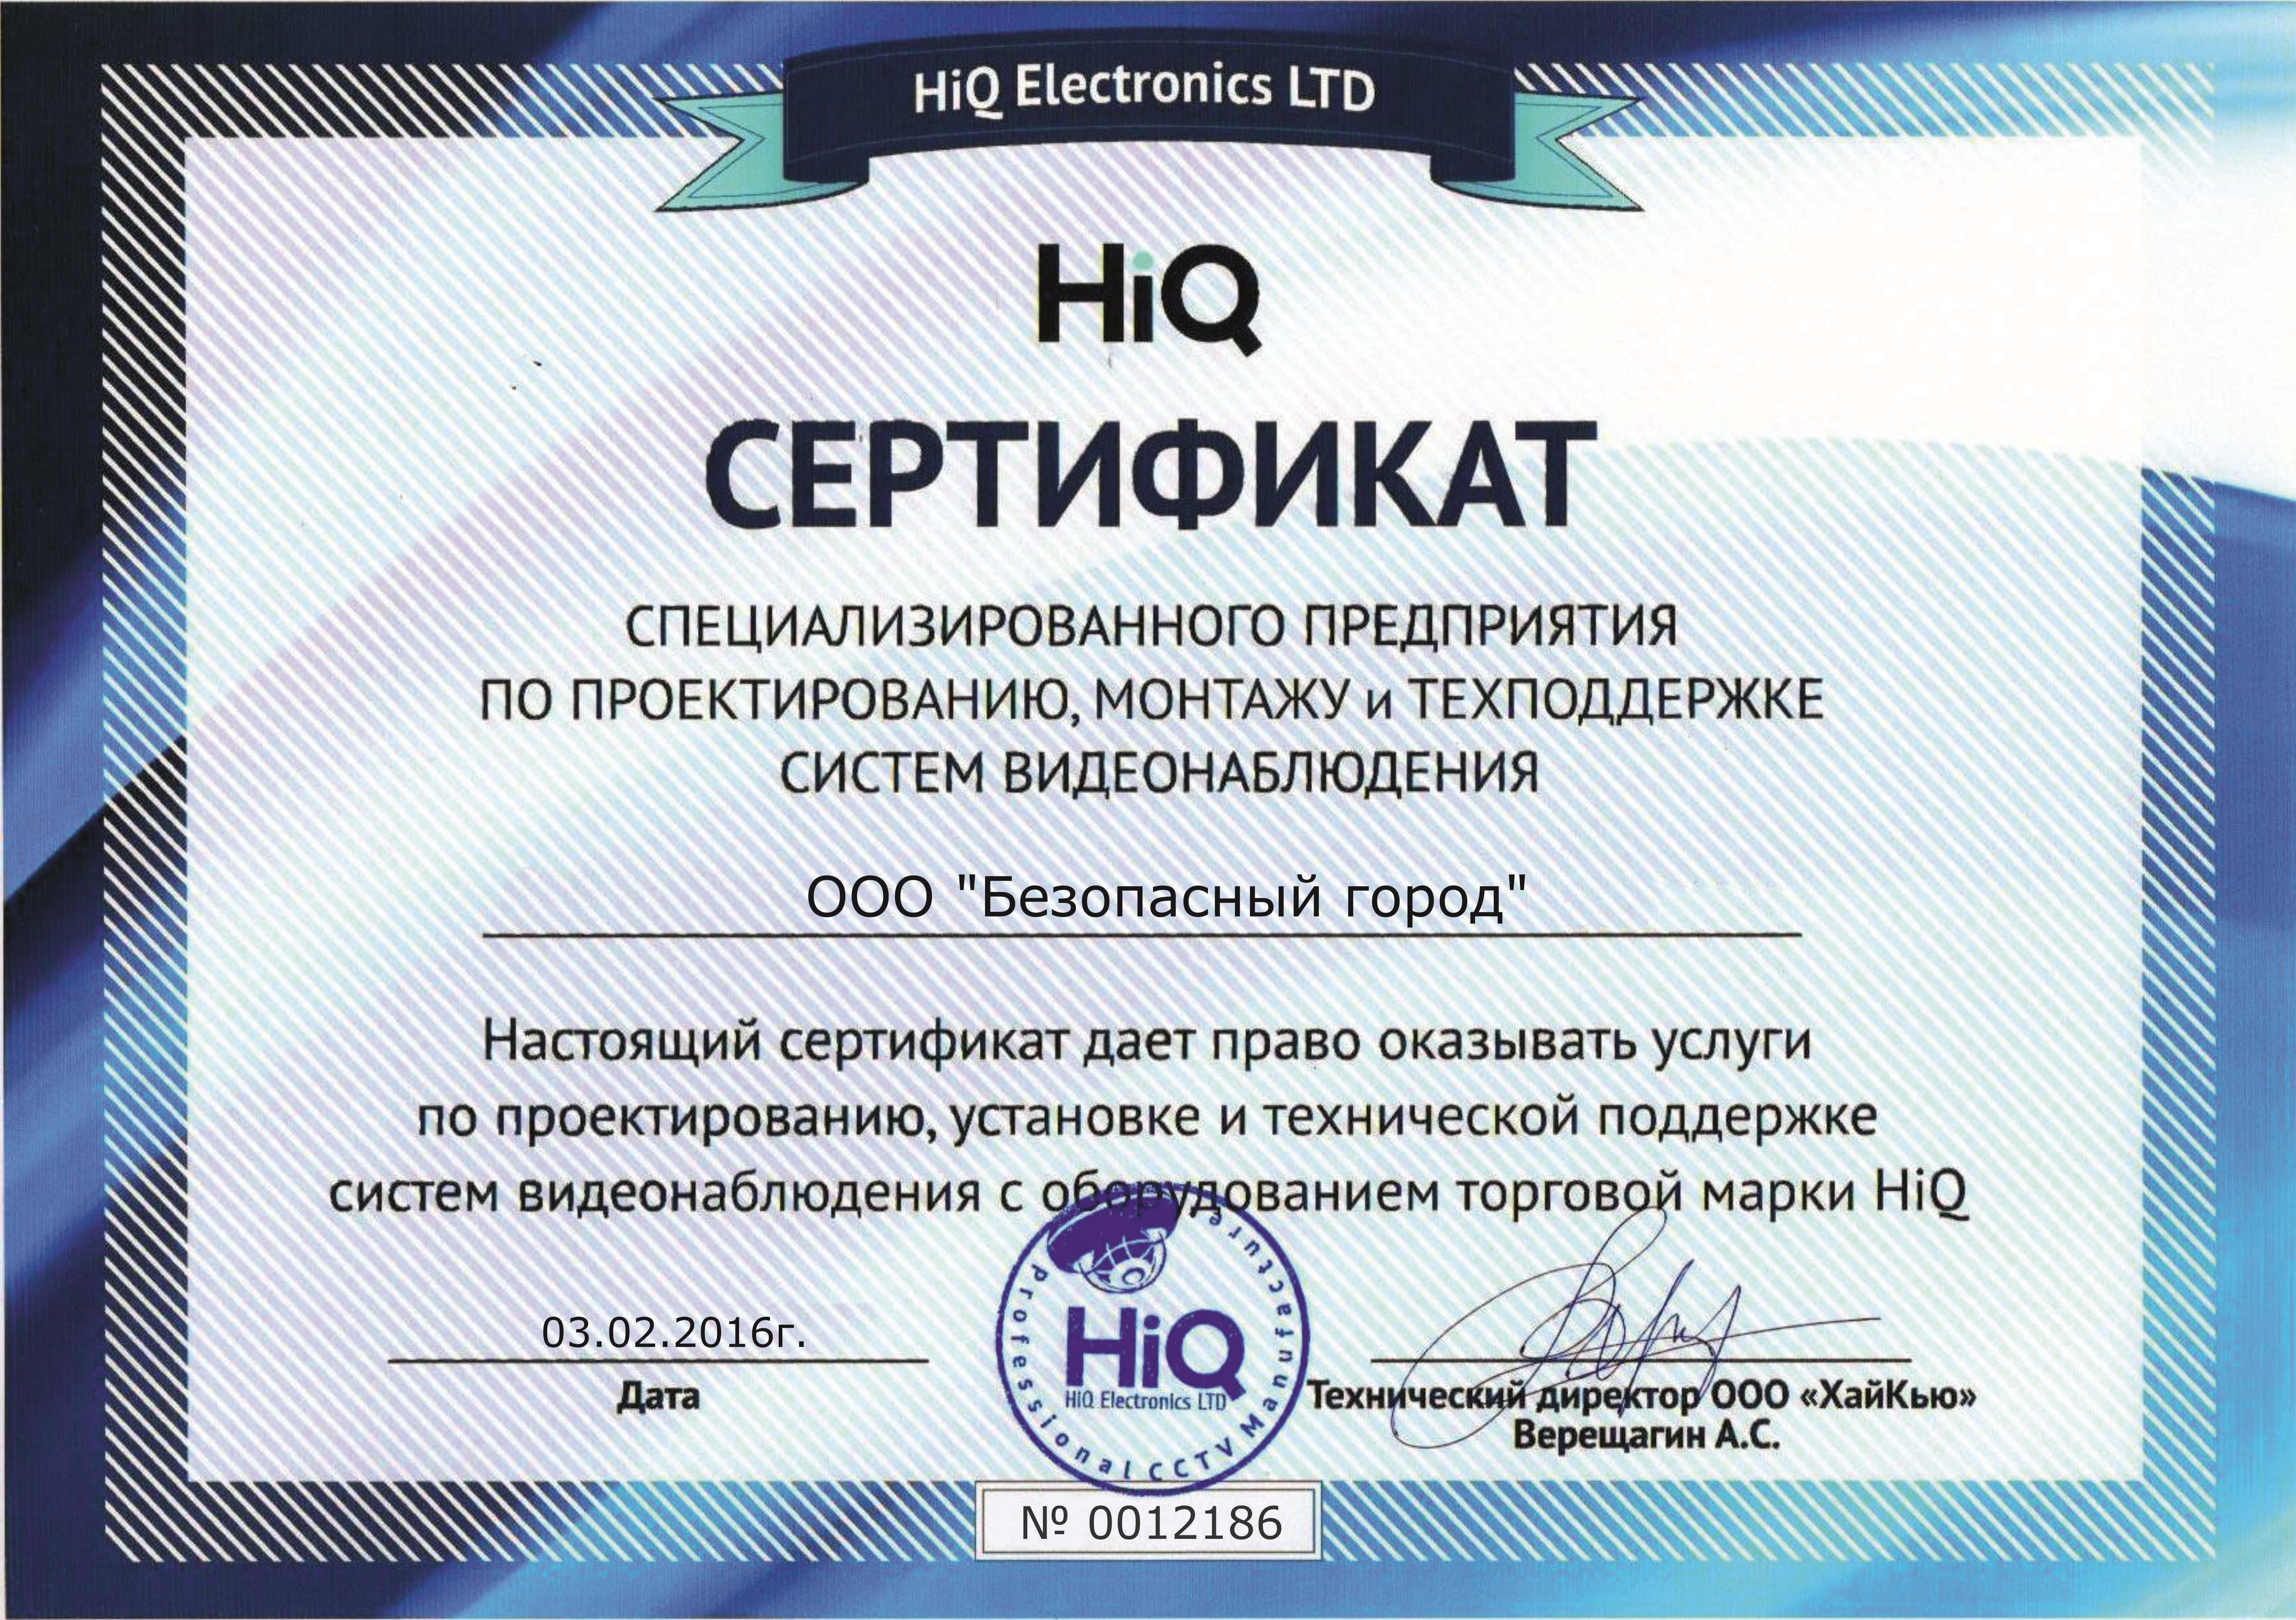 Сертификат от компании HIQ